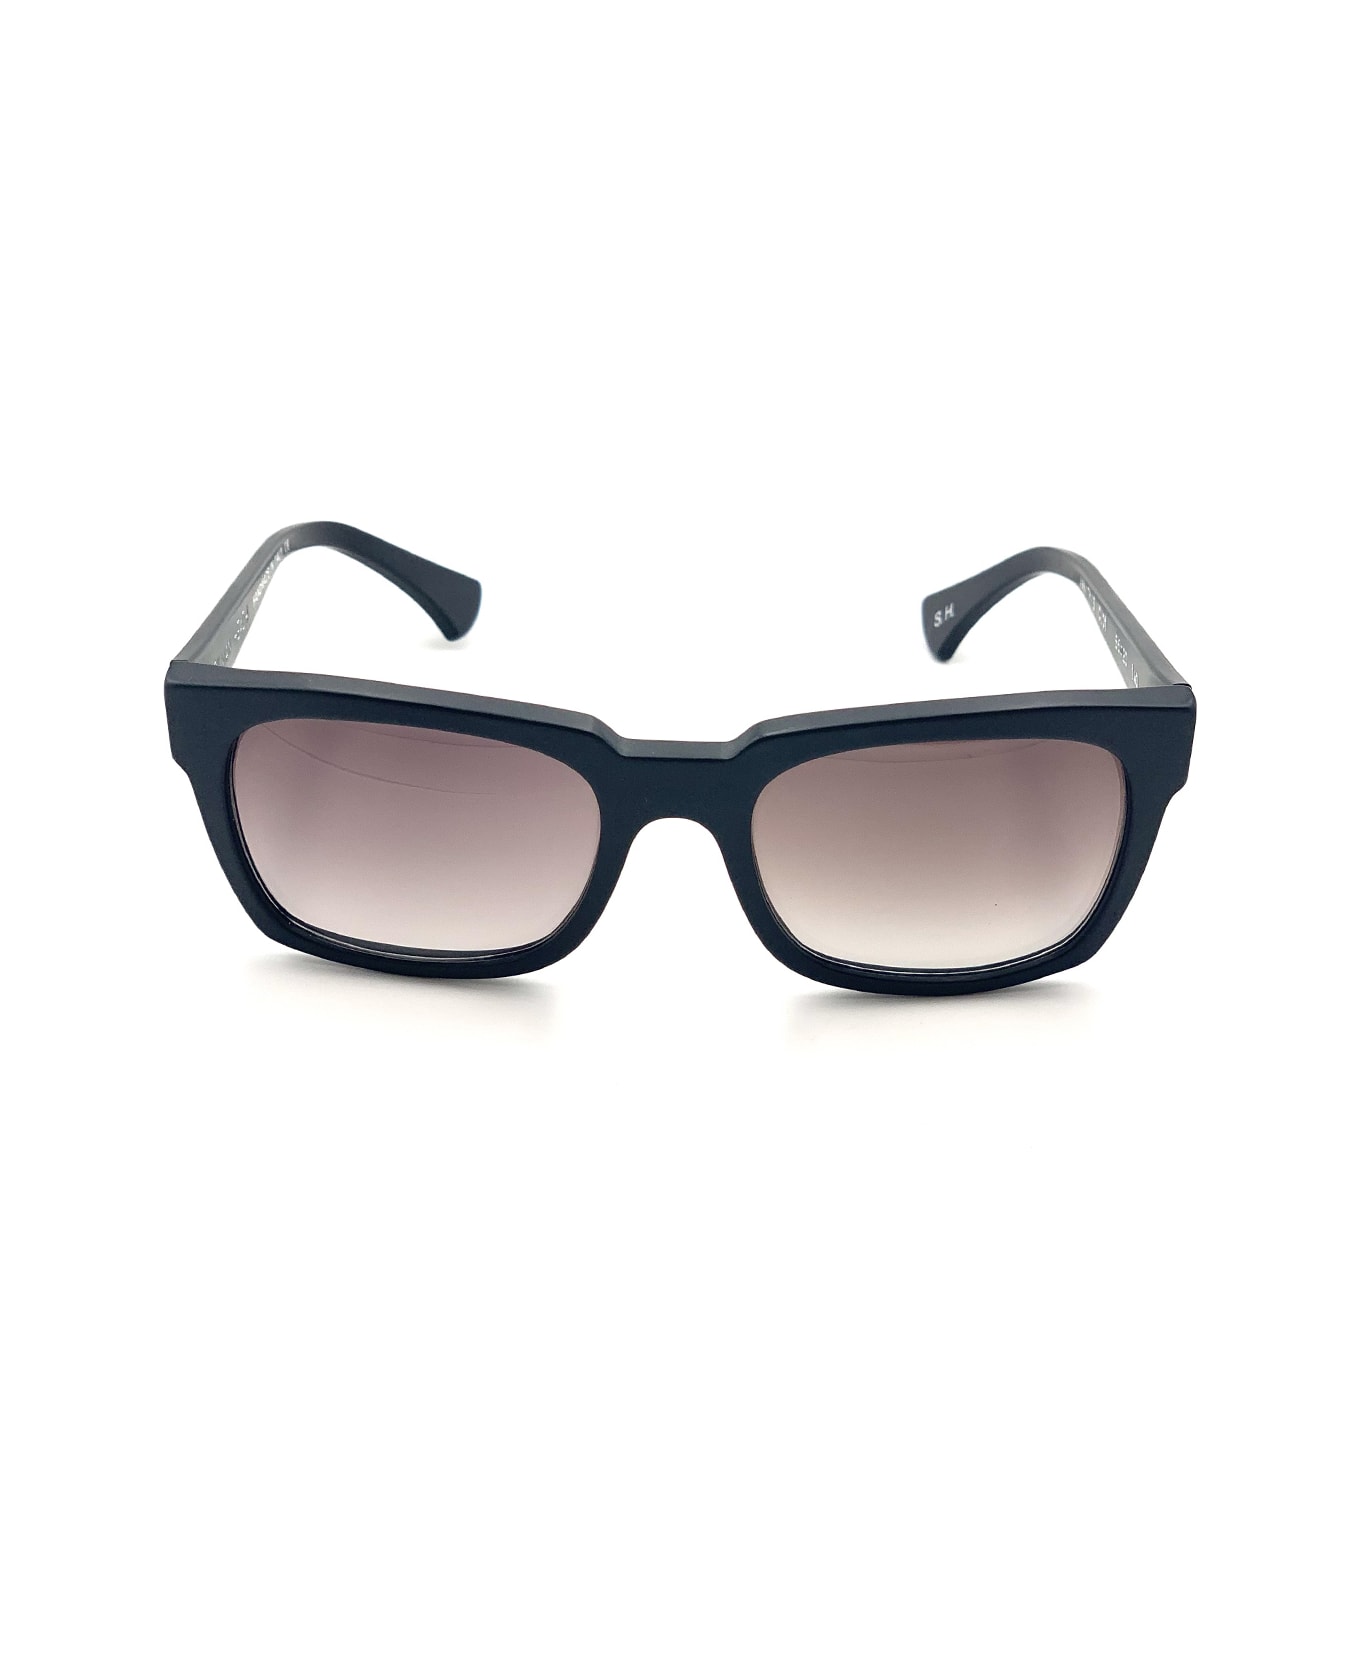 Silvian Heach Vanity/s Sunglasses - Nero サングラス